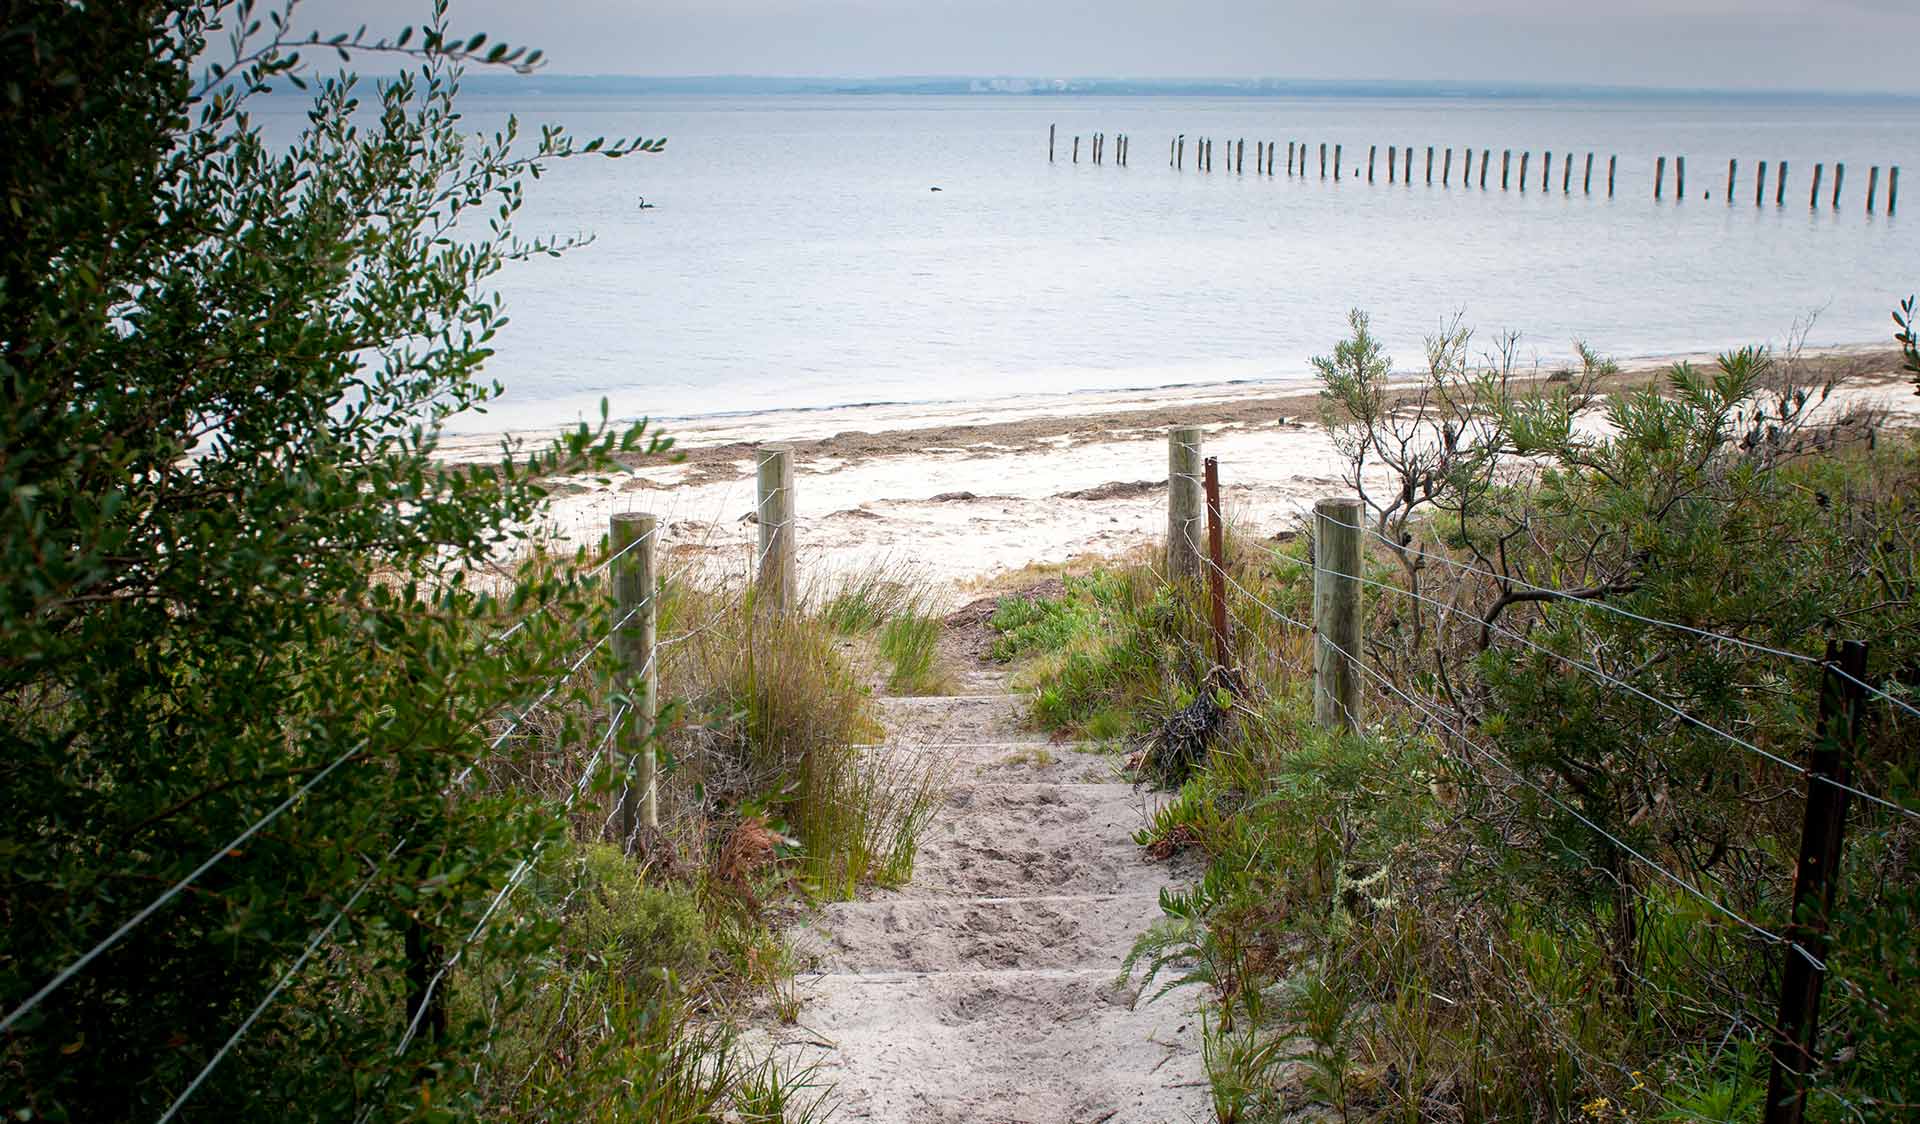 The path down to Fairhaven Beach.